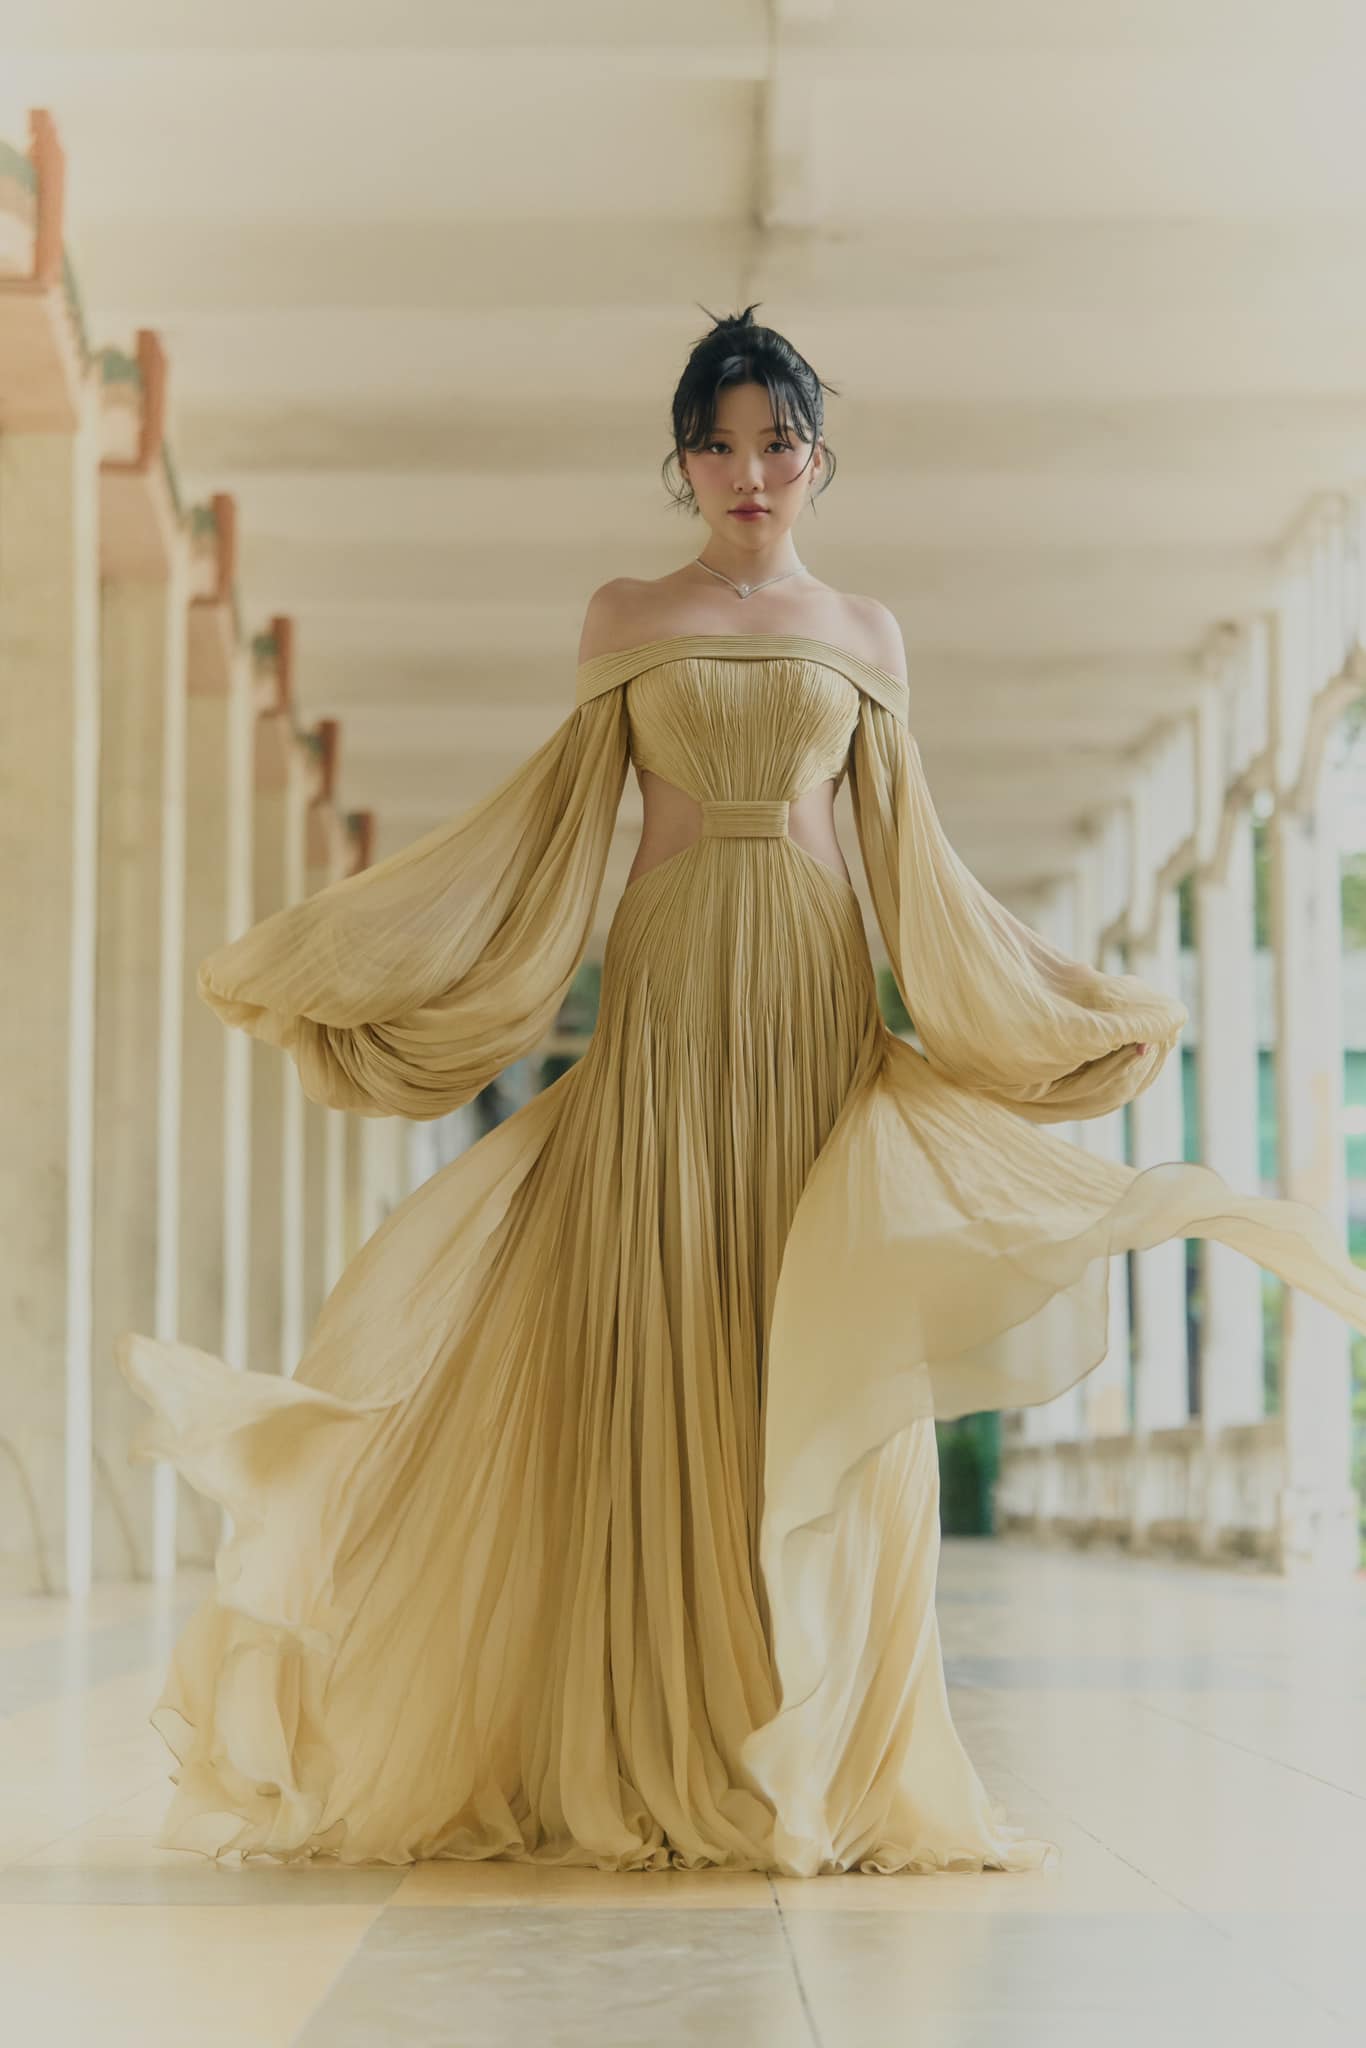 Em gái Trấn Thành diện váy cúp ngực, cắt khoét khoe dáng đẹp nuột nà - 2